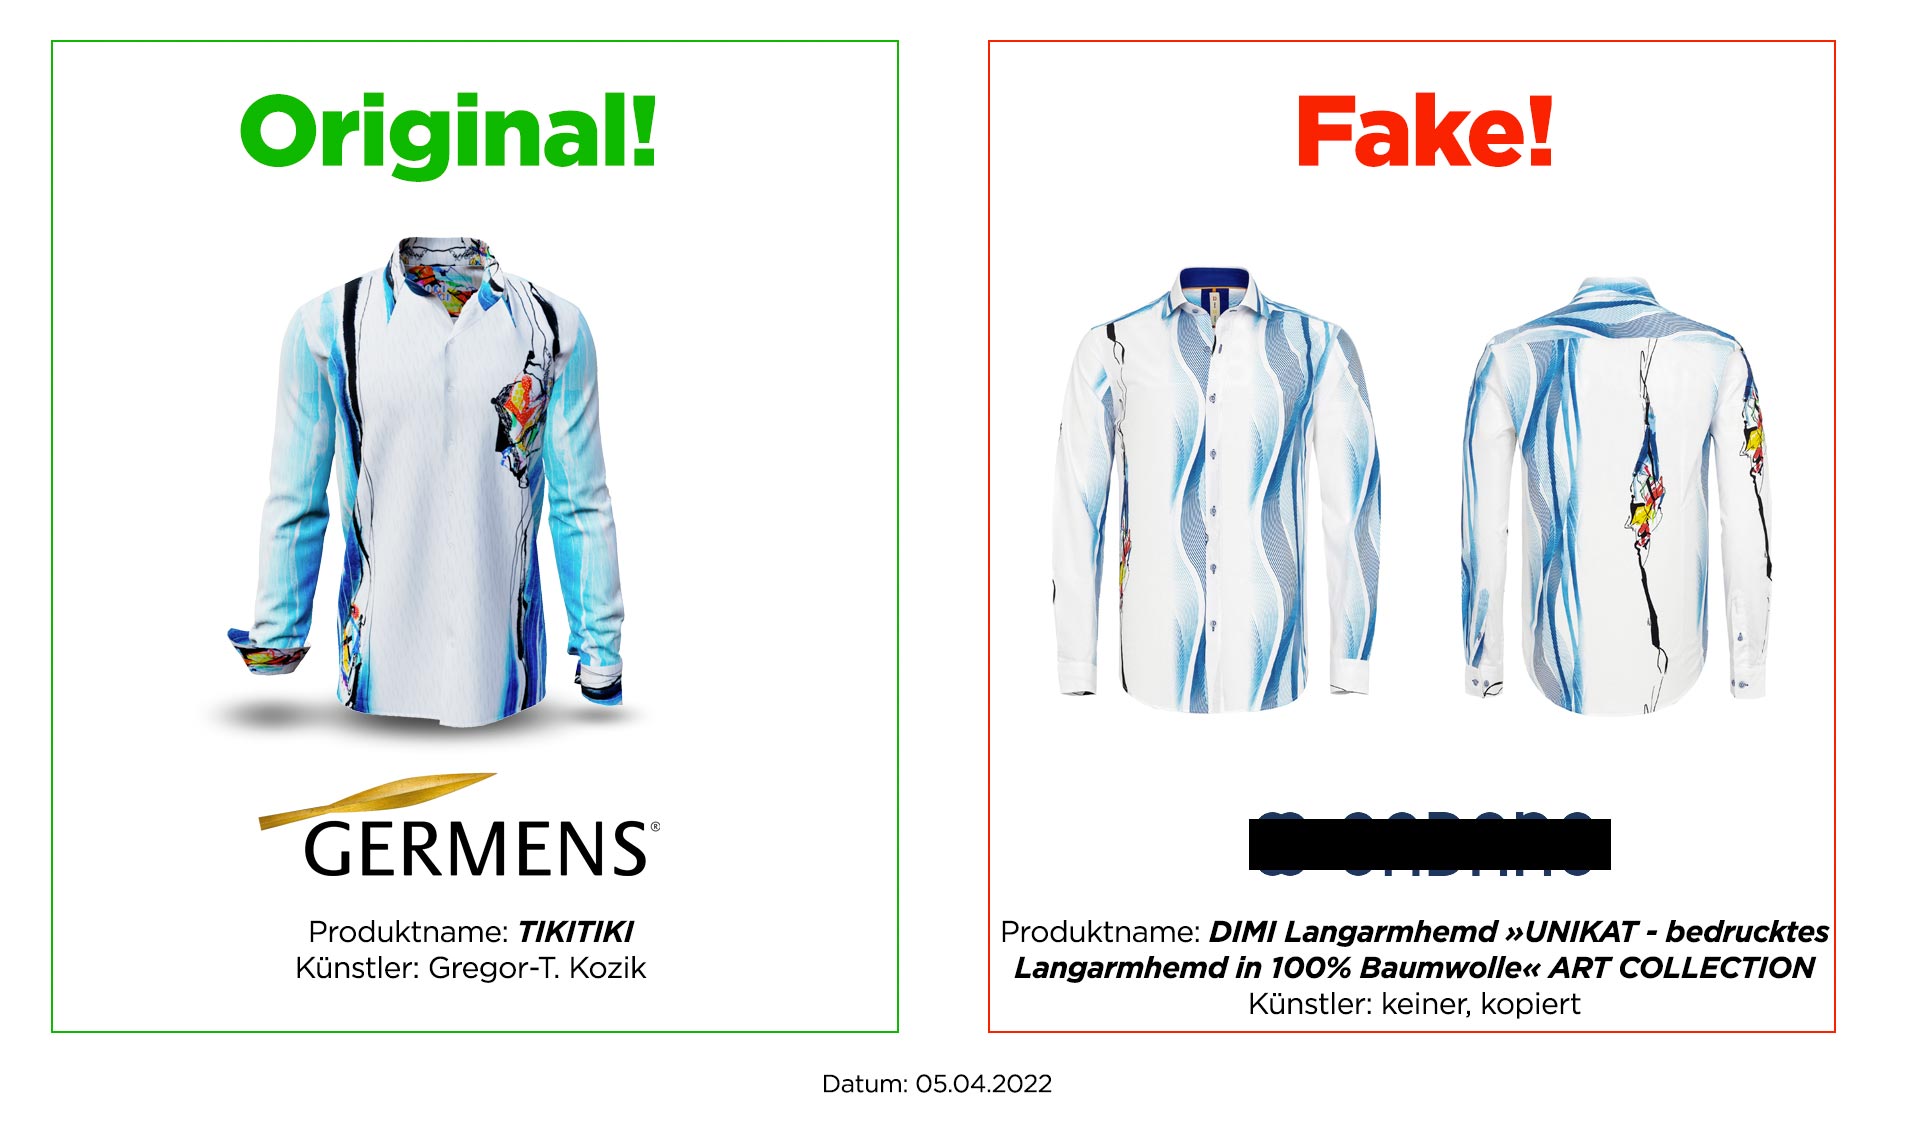 Original GERMENS® shirt TIKITIKI and plagiarism